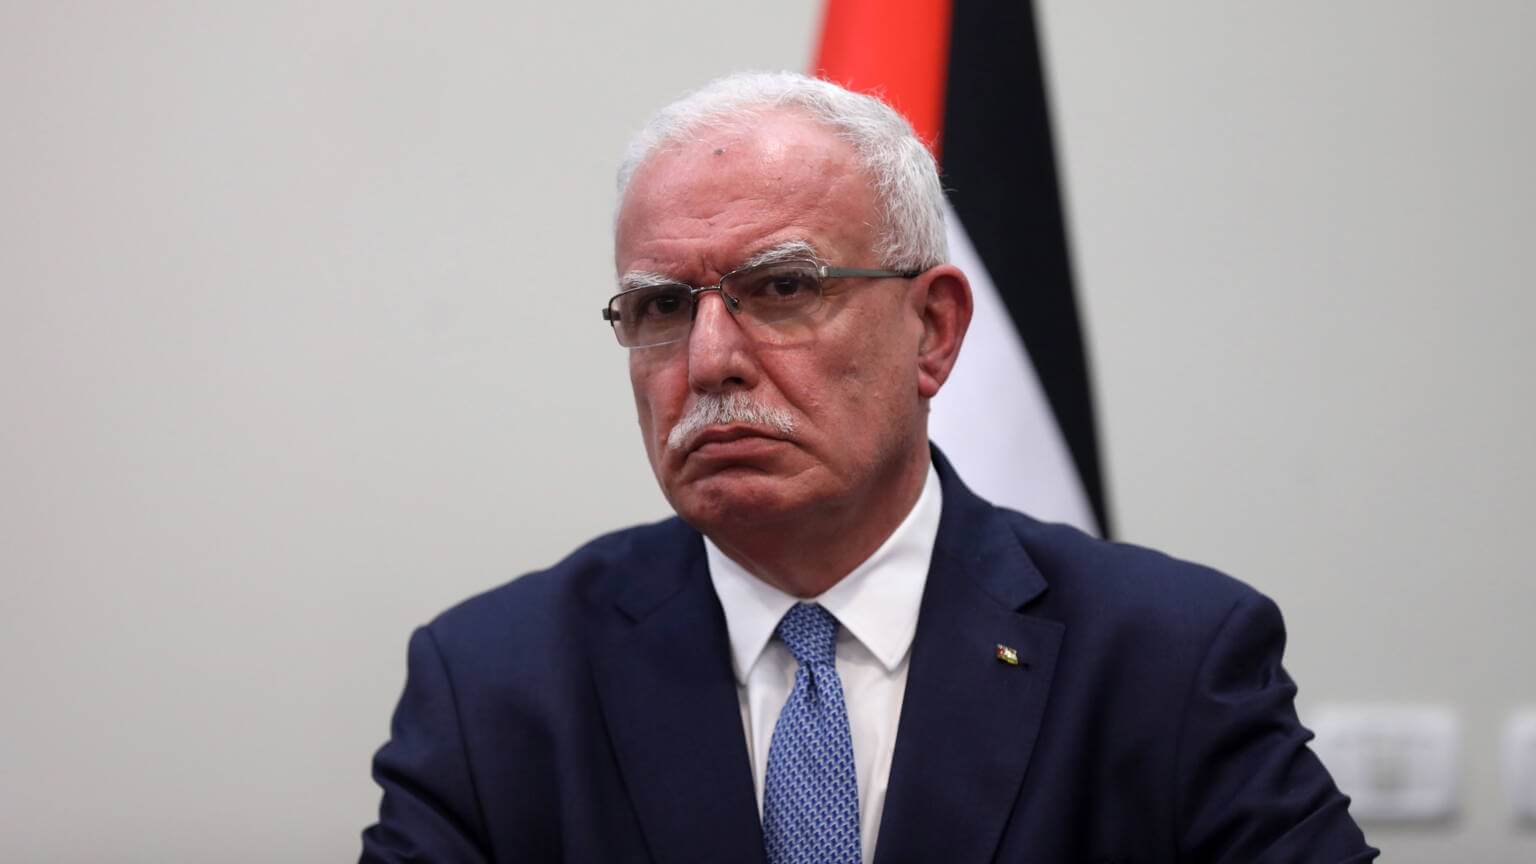 CPI: Israël révoque le permis de voyage spécial d’un ministre palestinien après une visite à La Haye